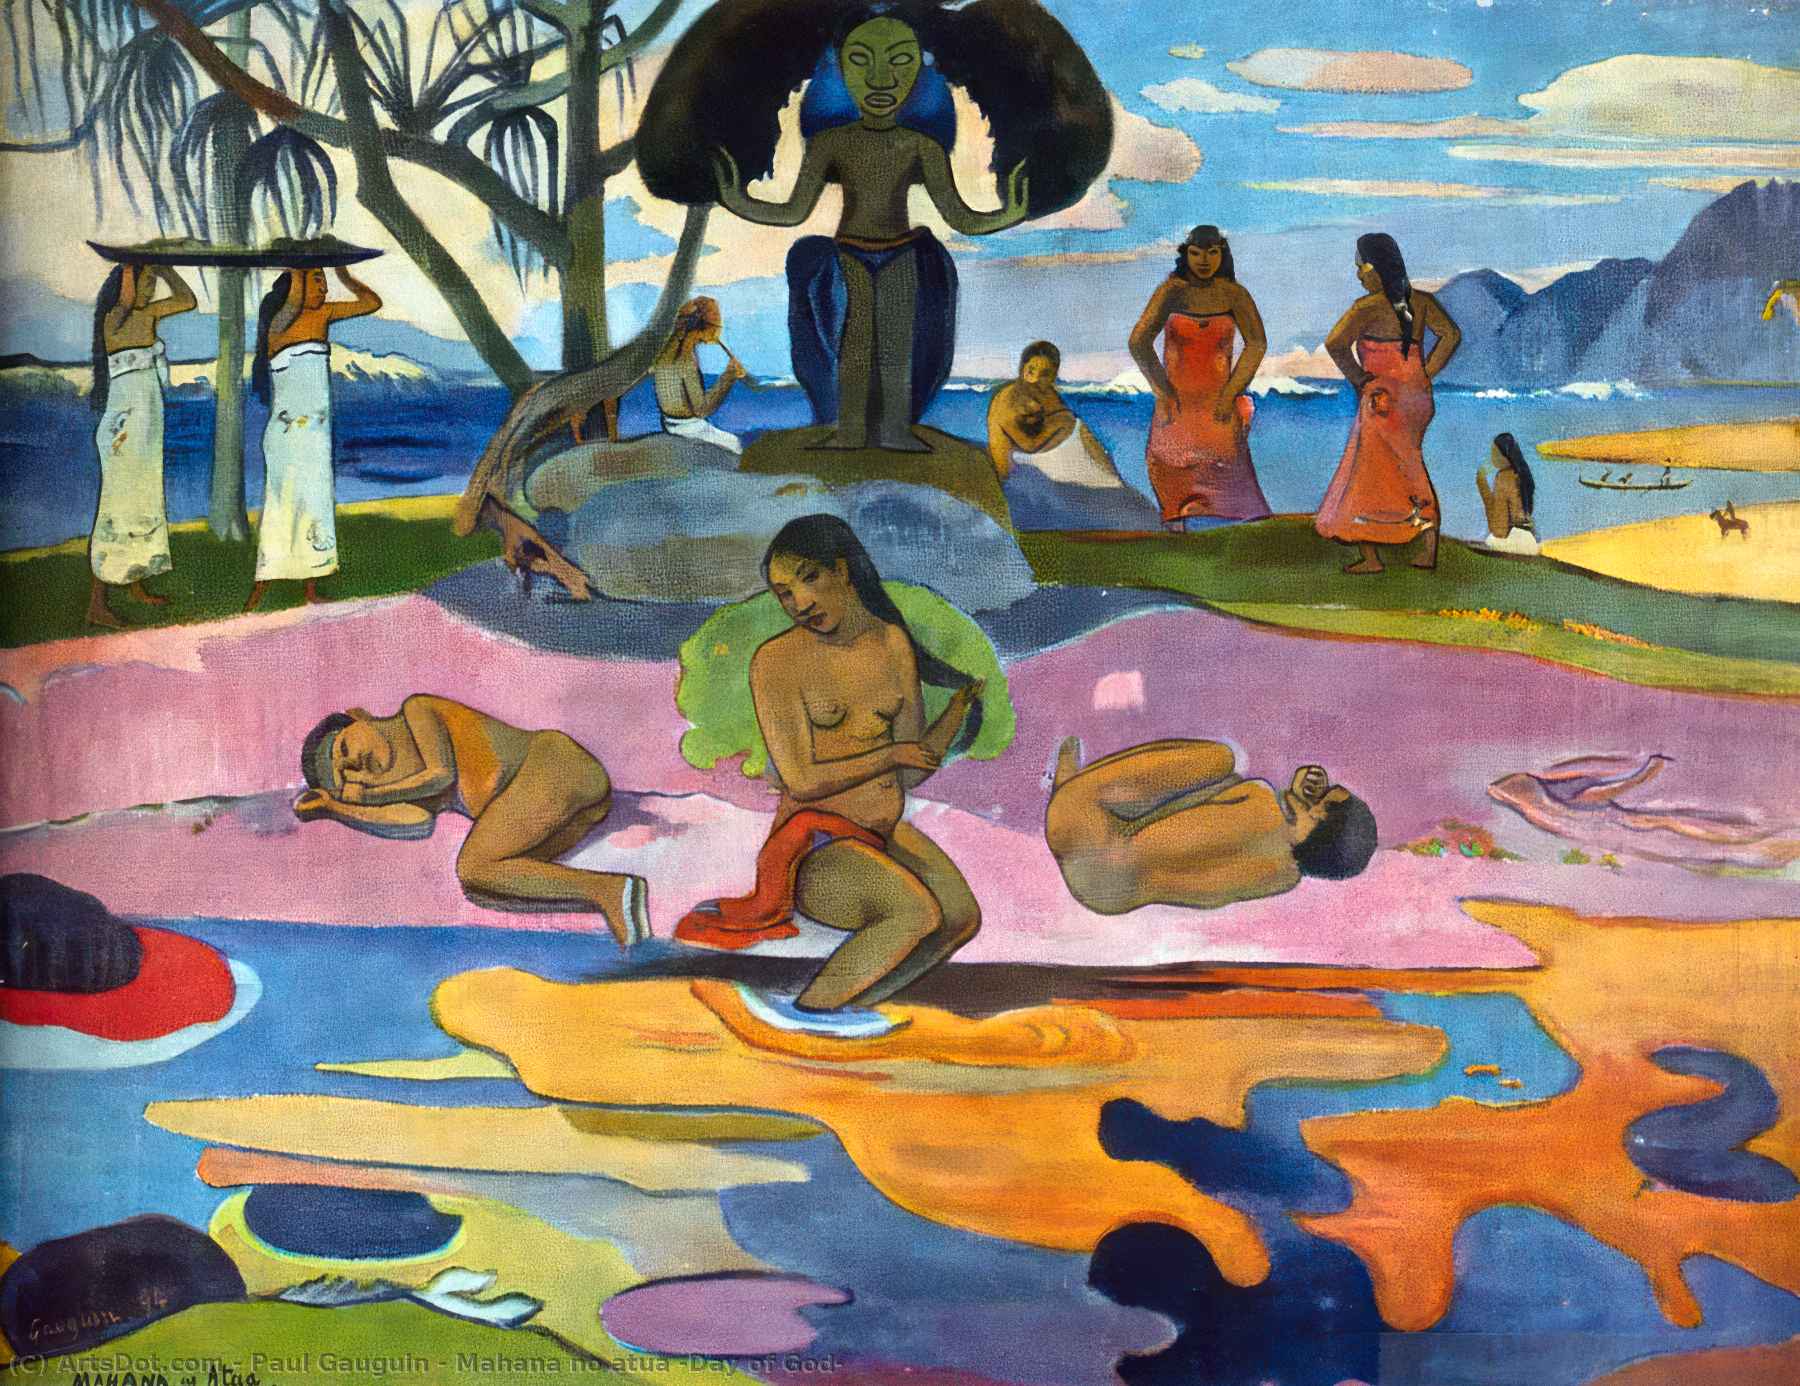 Wikioo.org - Encyklopedia Sztuk Pięknych - Malarstwo, Grafika Paul Gauguin - Mahana no atua (Day of God)